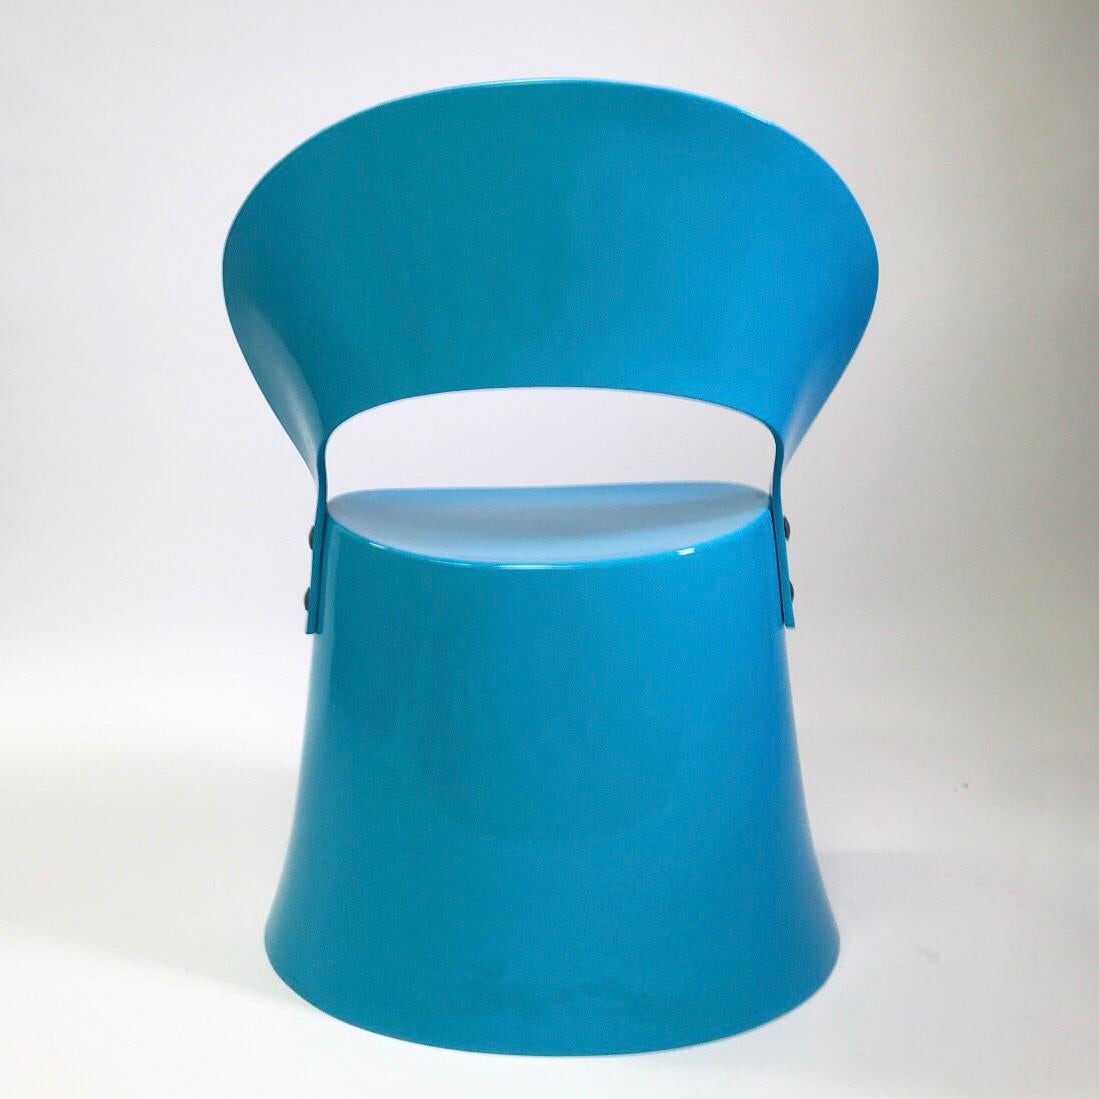 Pièce de collection ludique, de l'âge de l'espace et super rare de Nanna Ditzel pour OD Møbler / Domus Danica 1969. 

Chaise en fibre de verre bleu clair et brillant, conçue pour être utilisée à l'intérieur ou à l'extérieur. 

Etat impeccable, sans